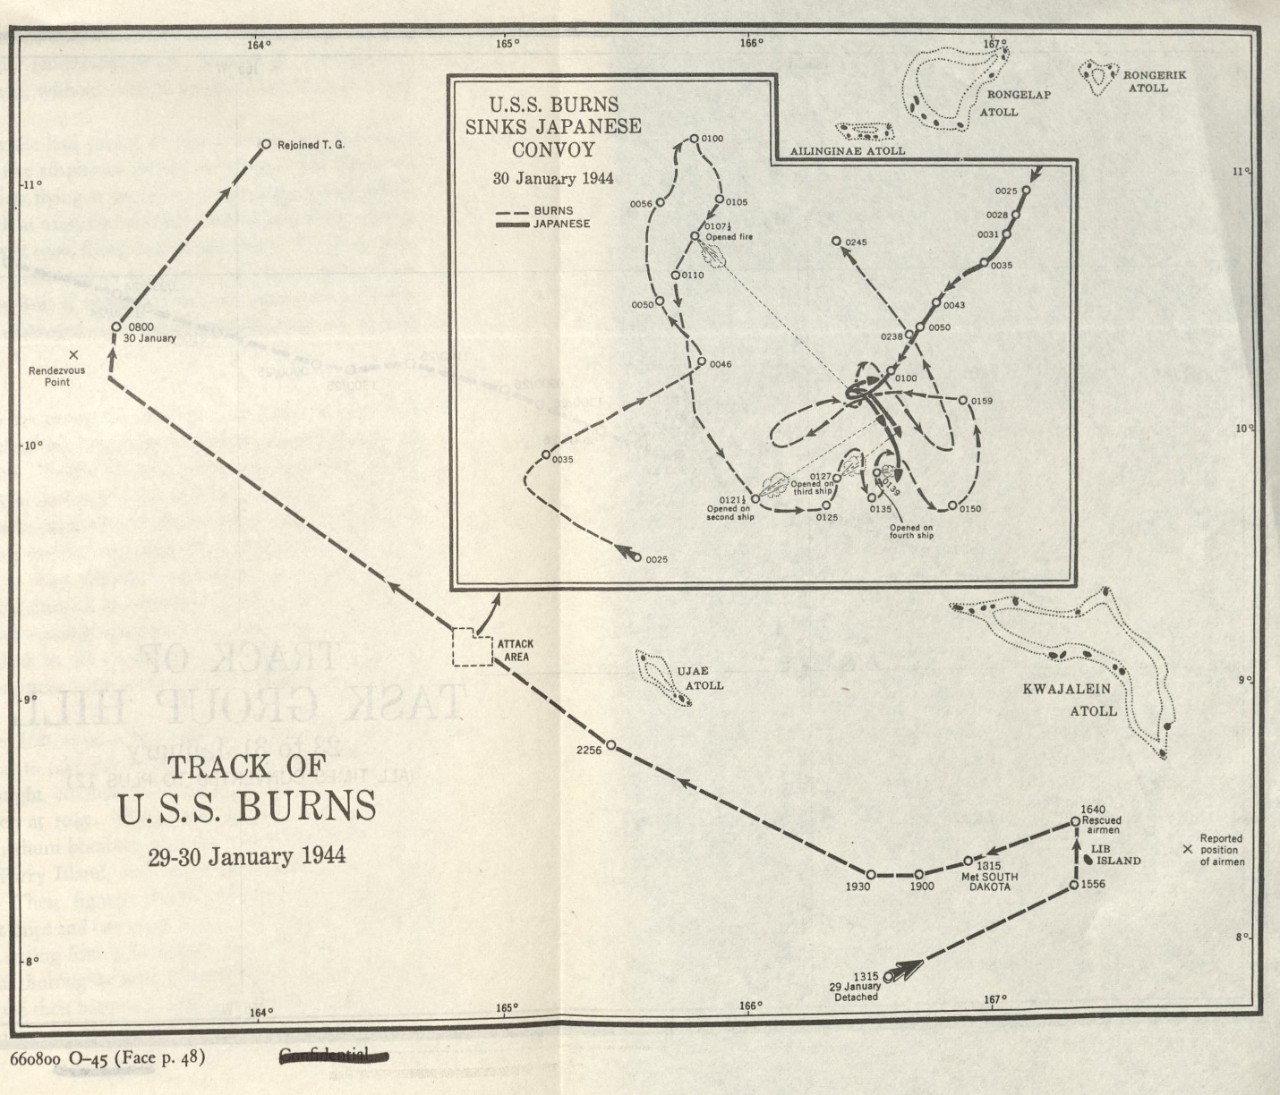 Track of U.S.S. Burns 29-30 January 1944